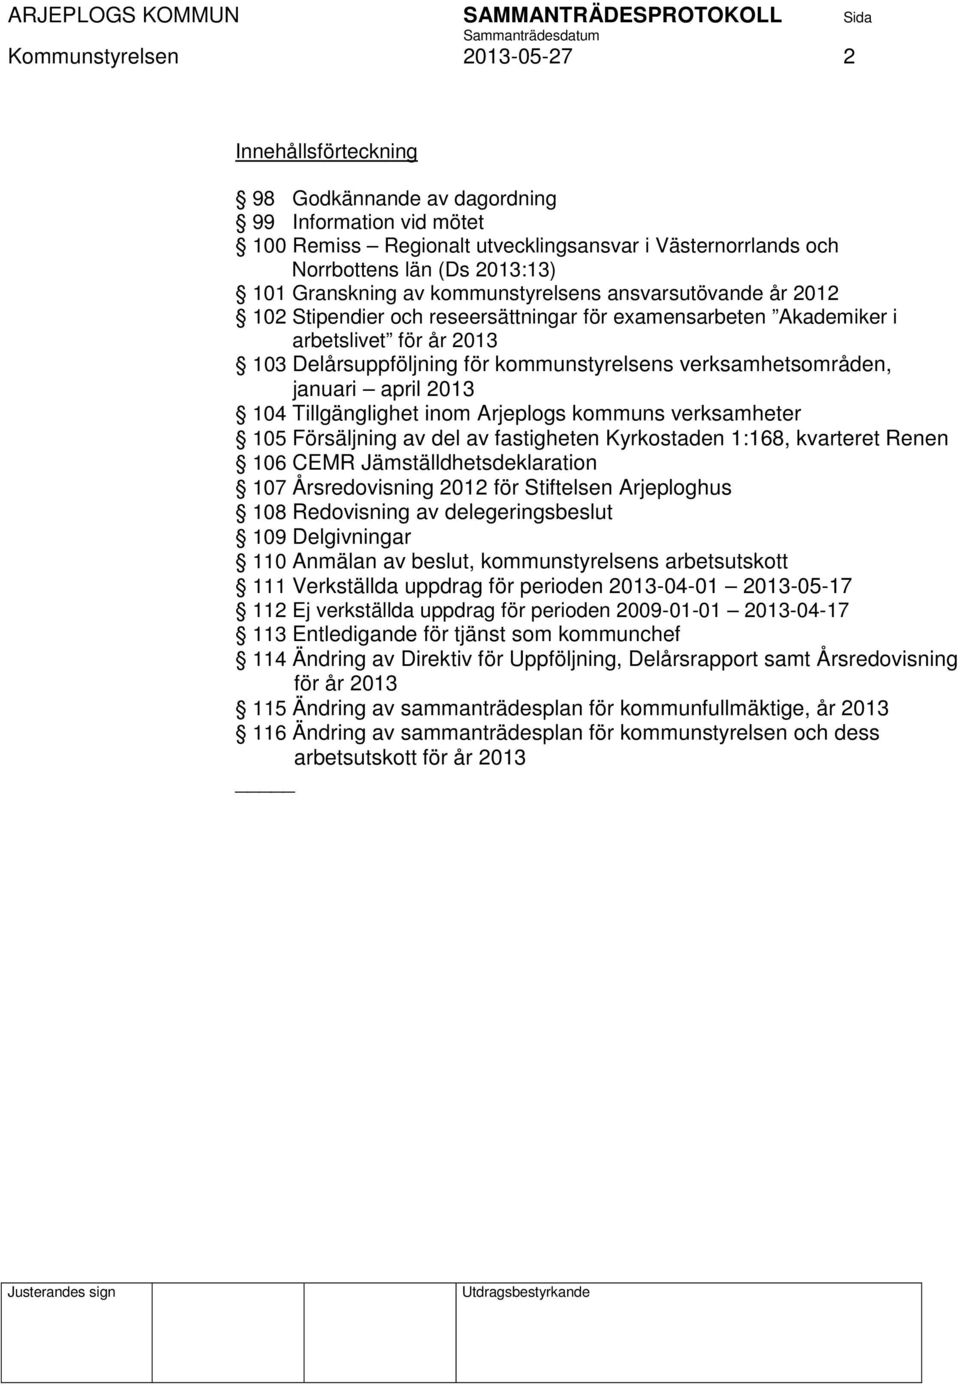 verksamhetsområden, januari april 2013 104 Tillgänglighet inom Arjeplogs kommuns verksamheter 105 Försäljning av del av fastigheten Kyrkostaden 1:168, kvarteret Renen 106 CEMR